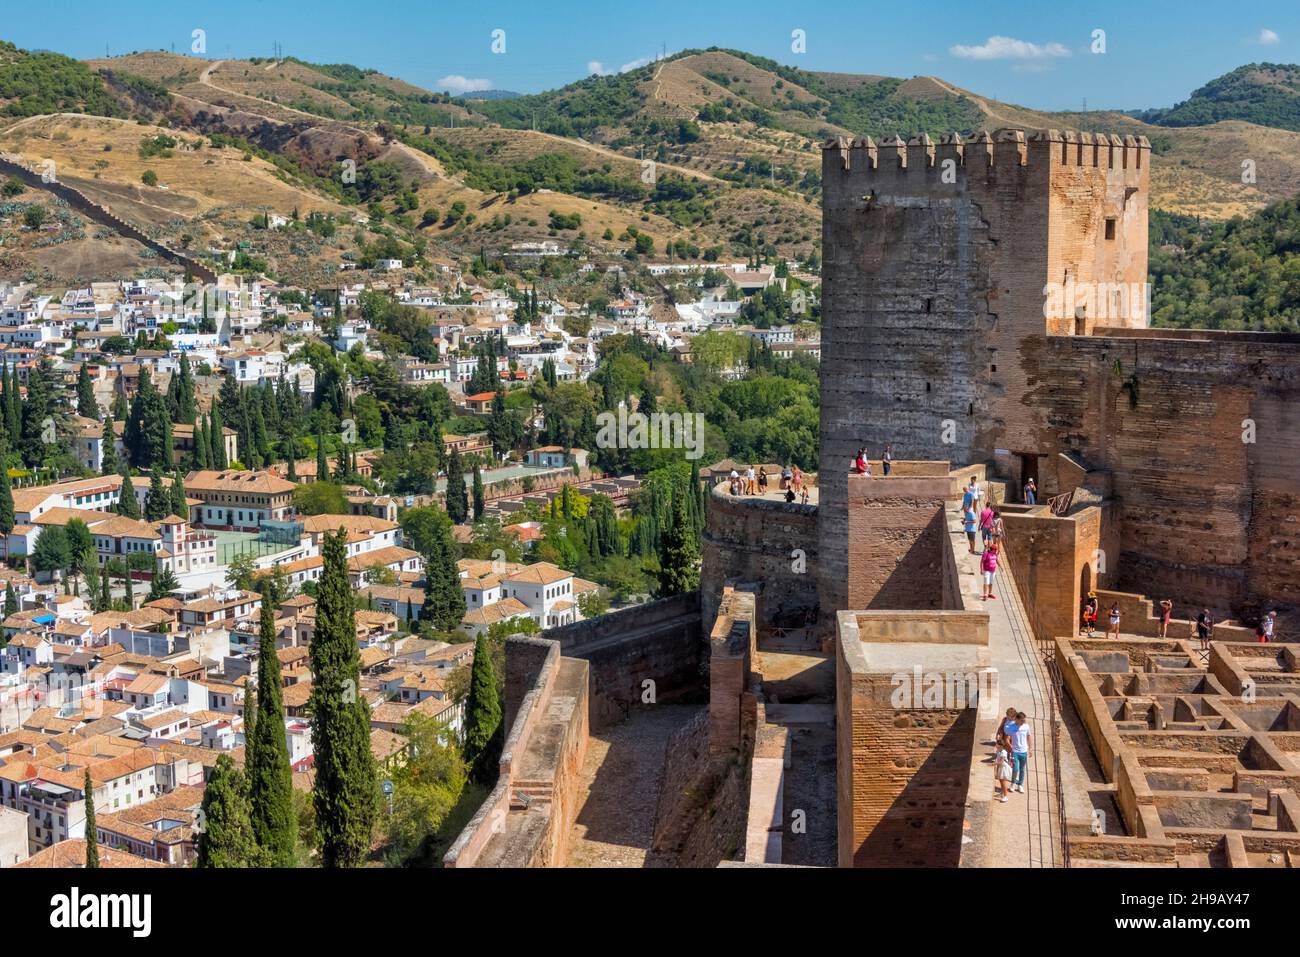 L'Alcazaba, tours de forteresse et murs extérieurs de l'Alhambra, surplombant le paysage urbain de Grenade, province de Grenade, Communauté autonome d'Andalousie, Espagne Banque D'Images